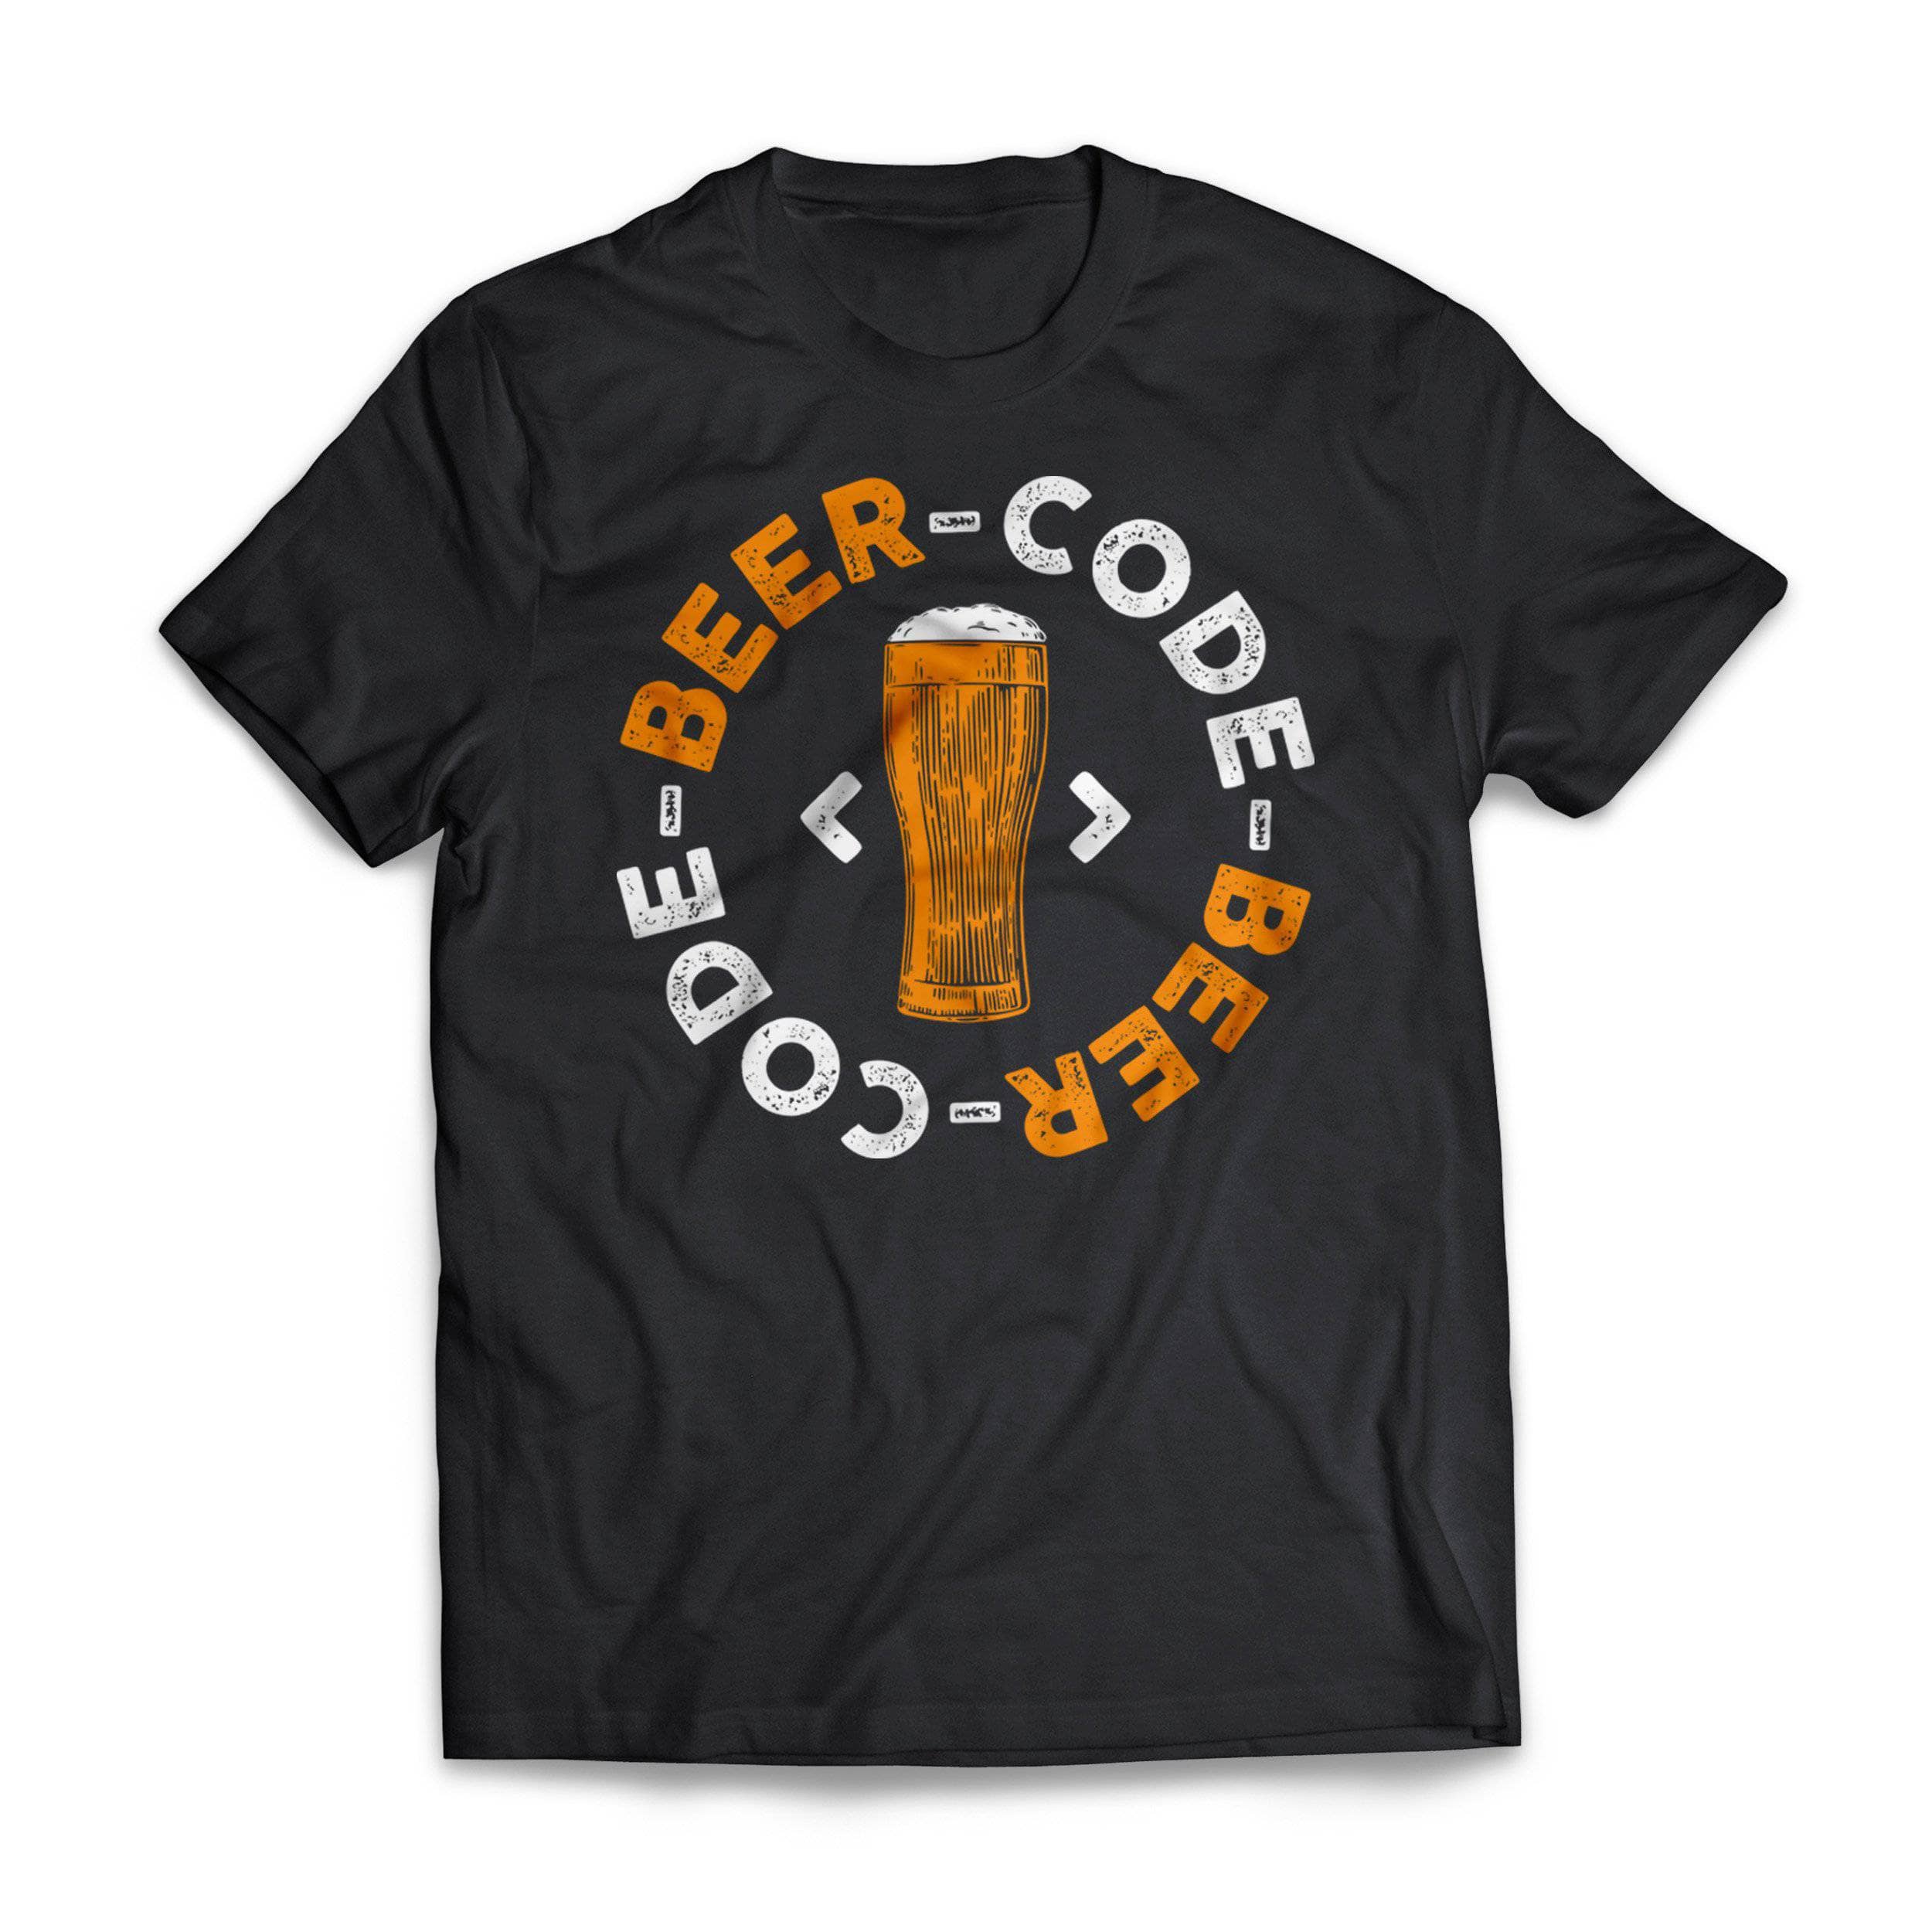 Beer Code Short Sleeve Tee